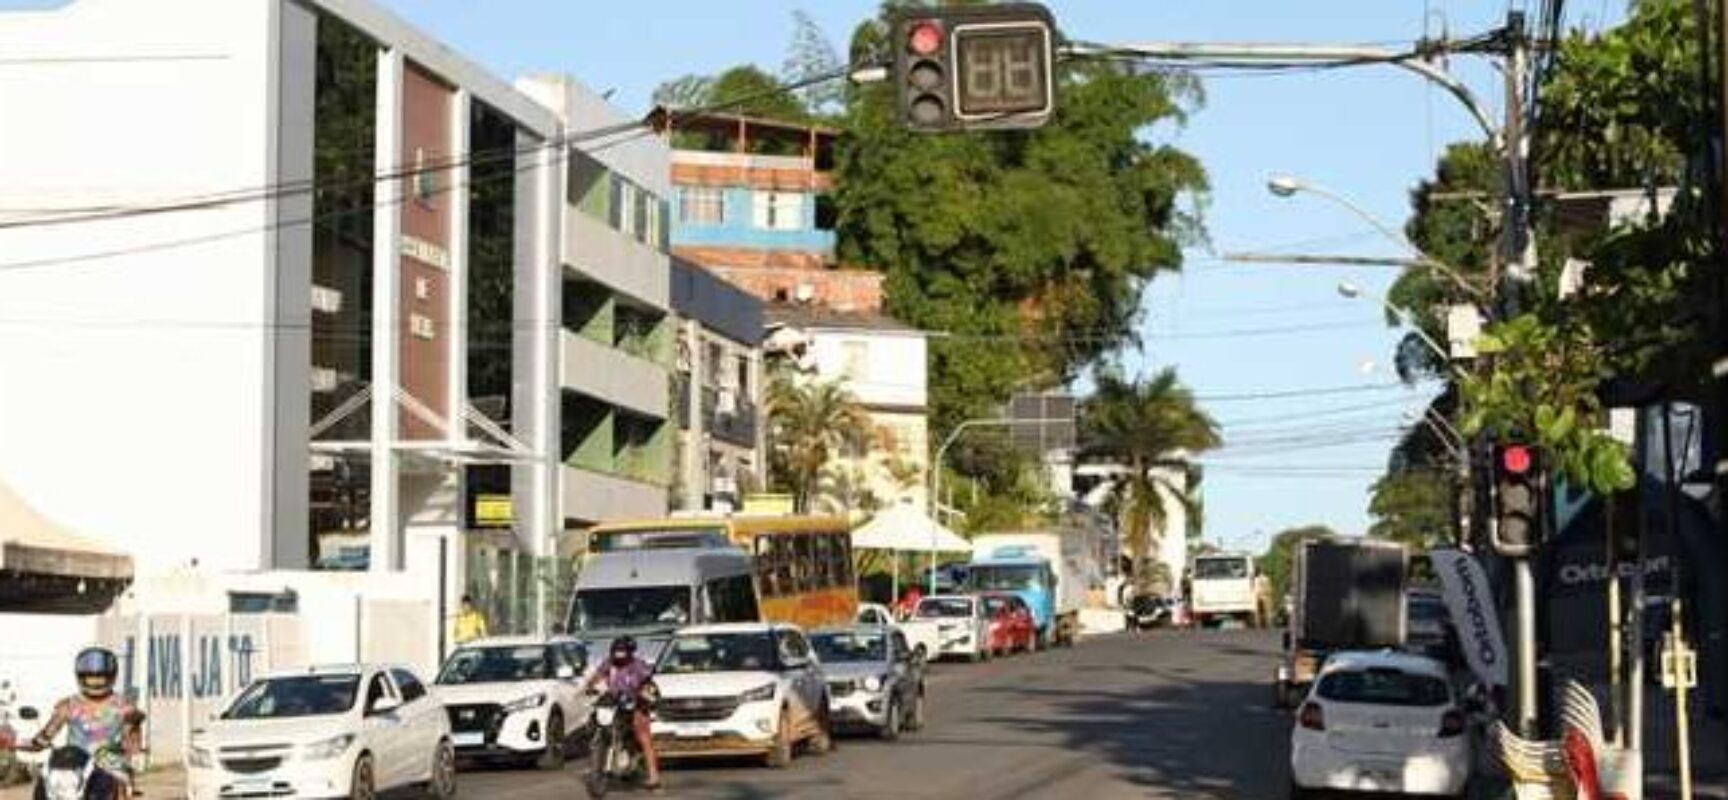 Prefeitura de Ilhéus investe R$ 4 milhões para modernizar sinalização semafórica no município